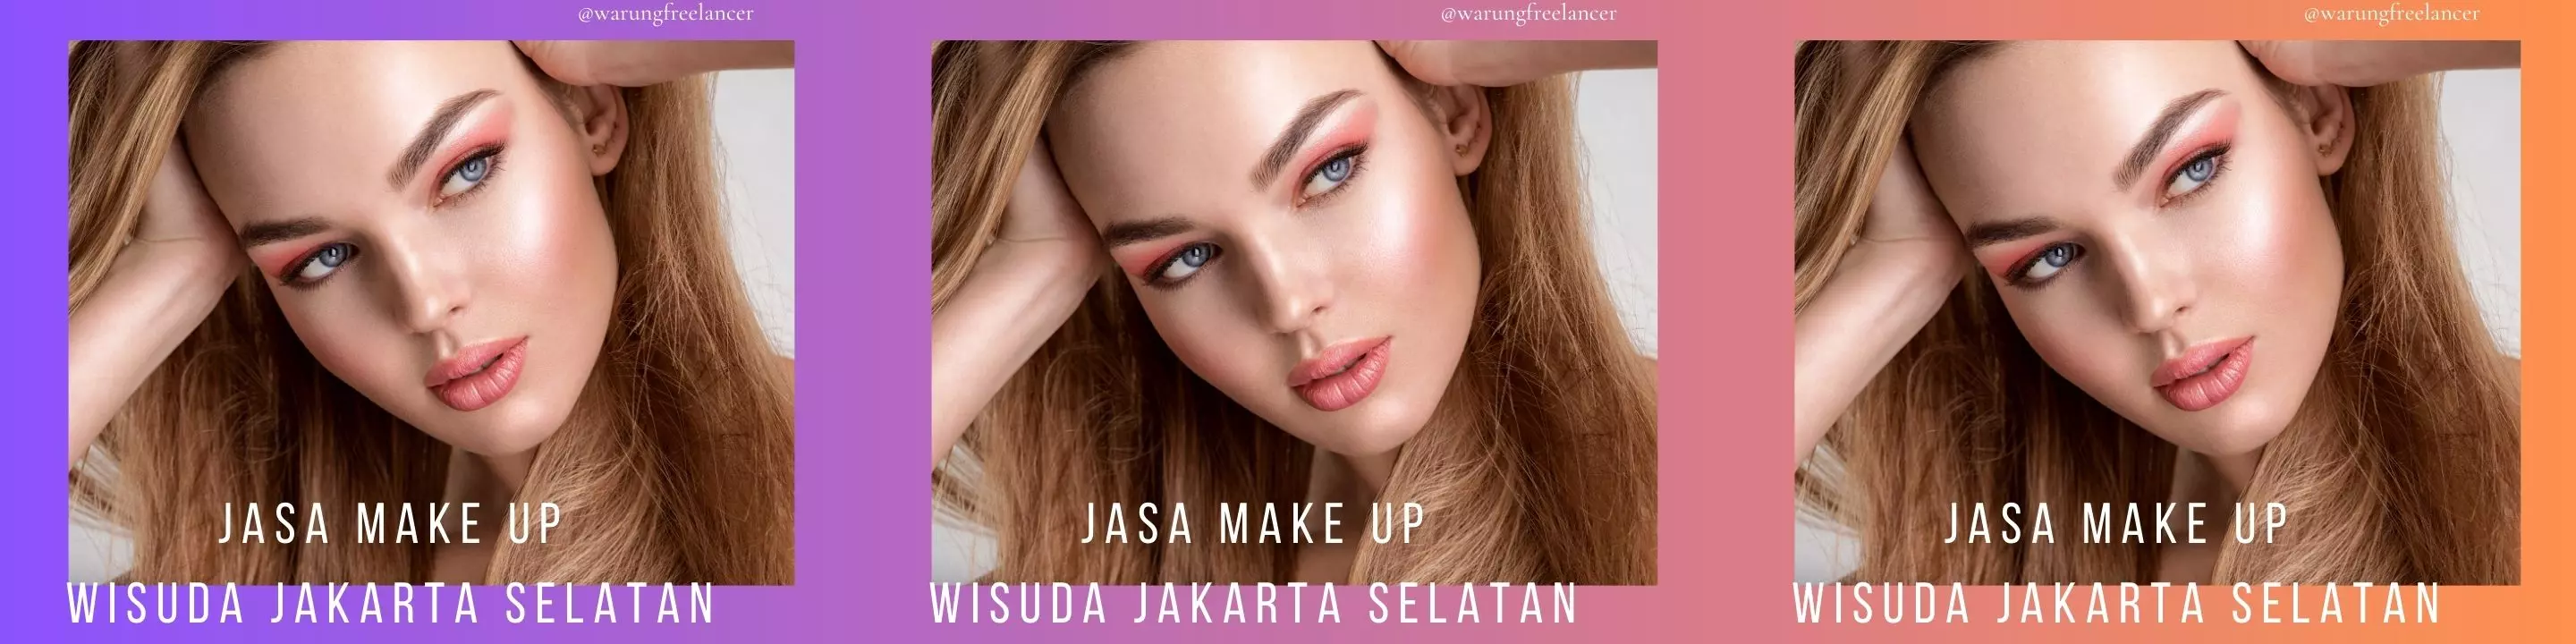 Jasa Make Up Wisuda Jakarta Selatan